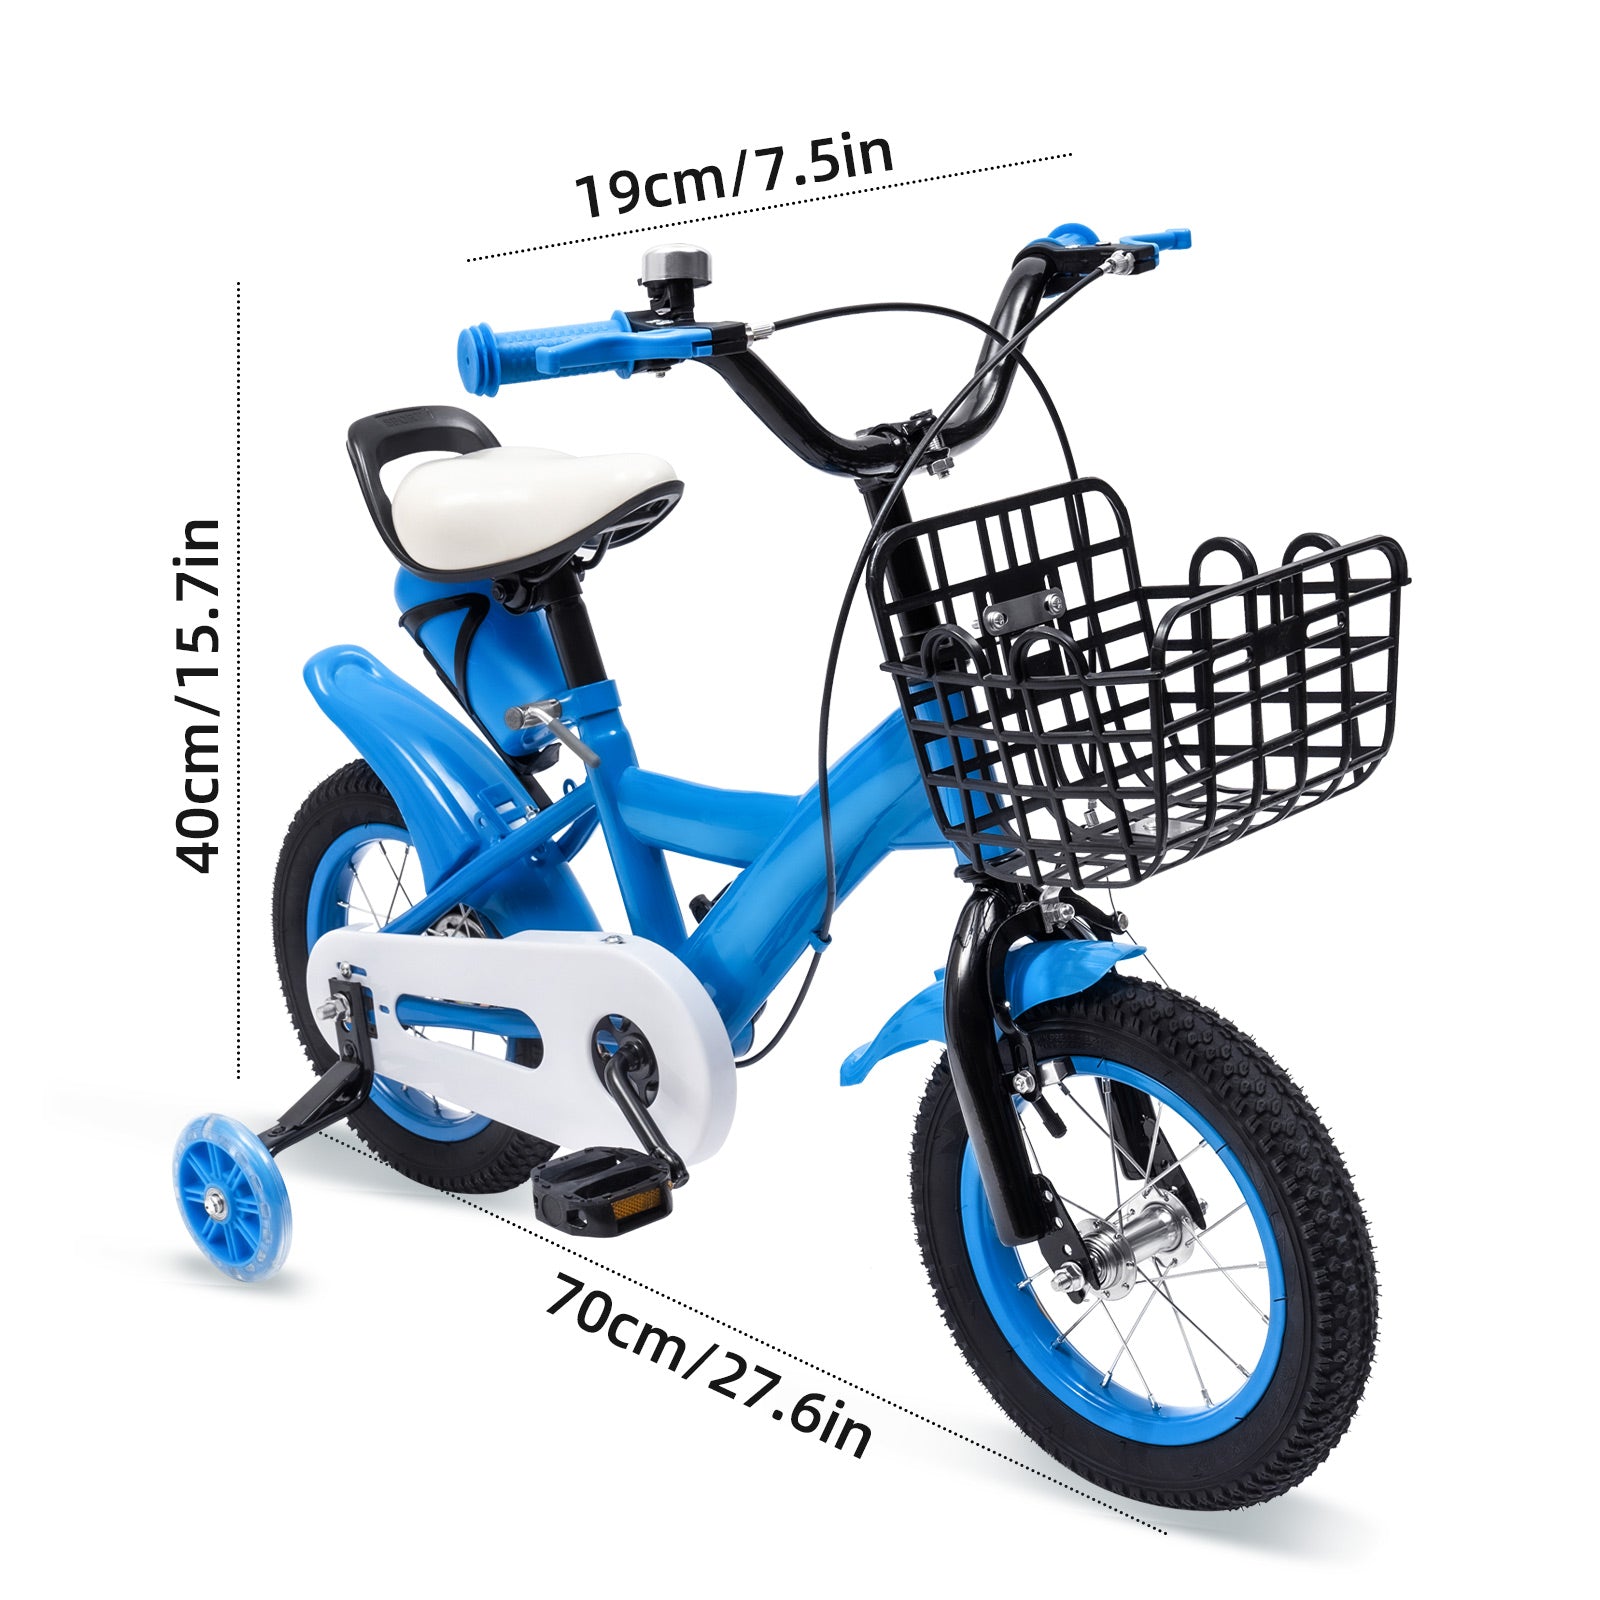 12" Fahrrad Kinderfahrrad mit Korb Stützräder Safety Anfänger Kinder Fahrrad blau